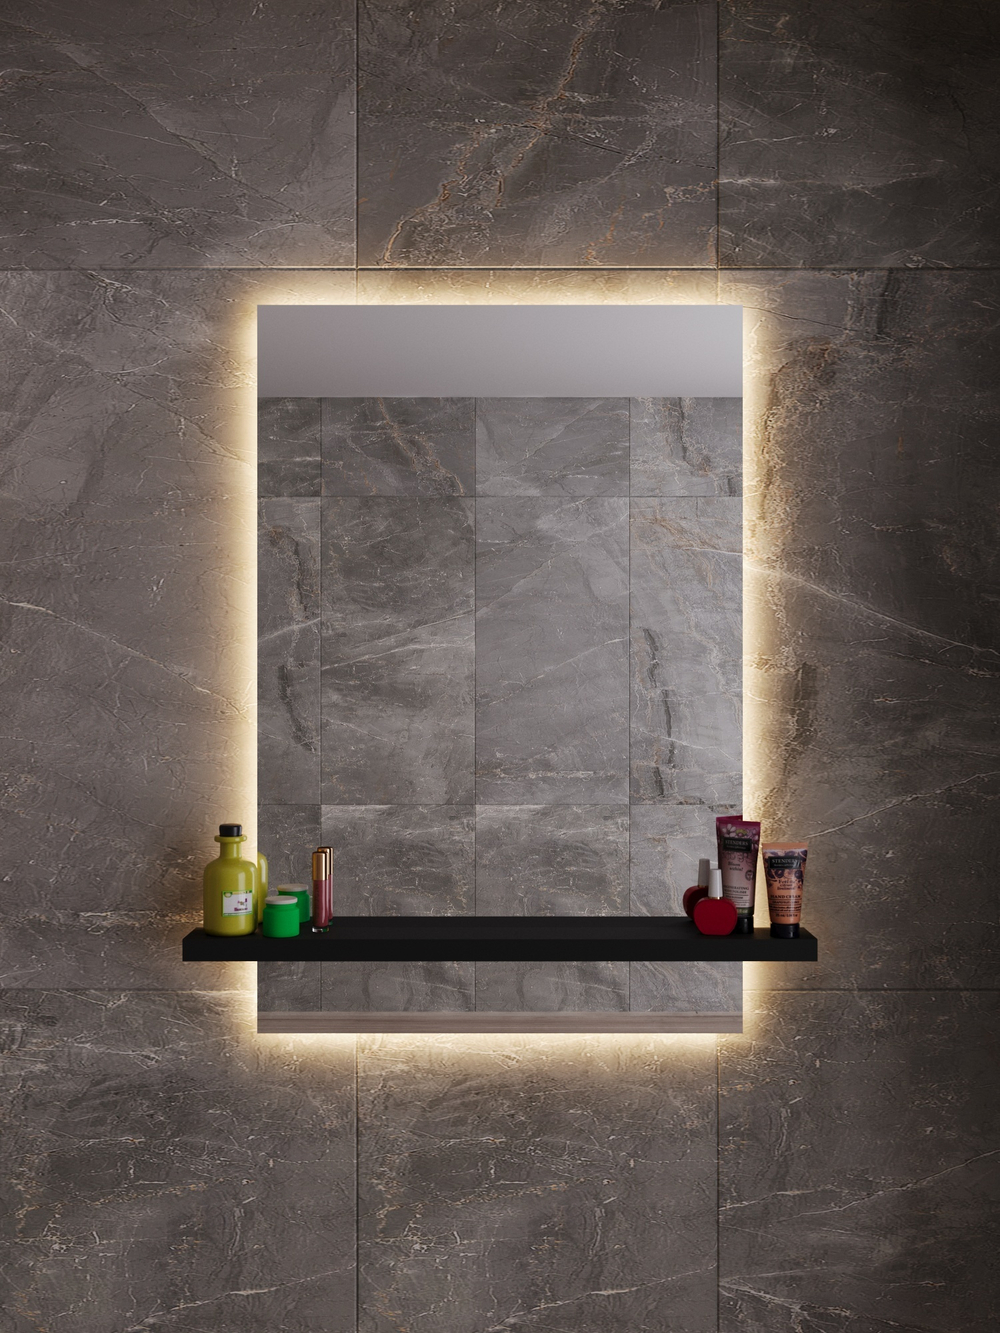 Прямоугольное зеркало для ванной комнаты с полкой. LED подсветка.